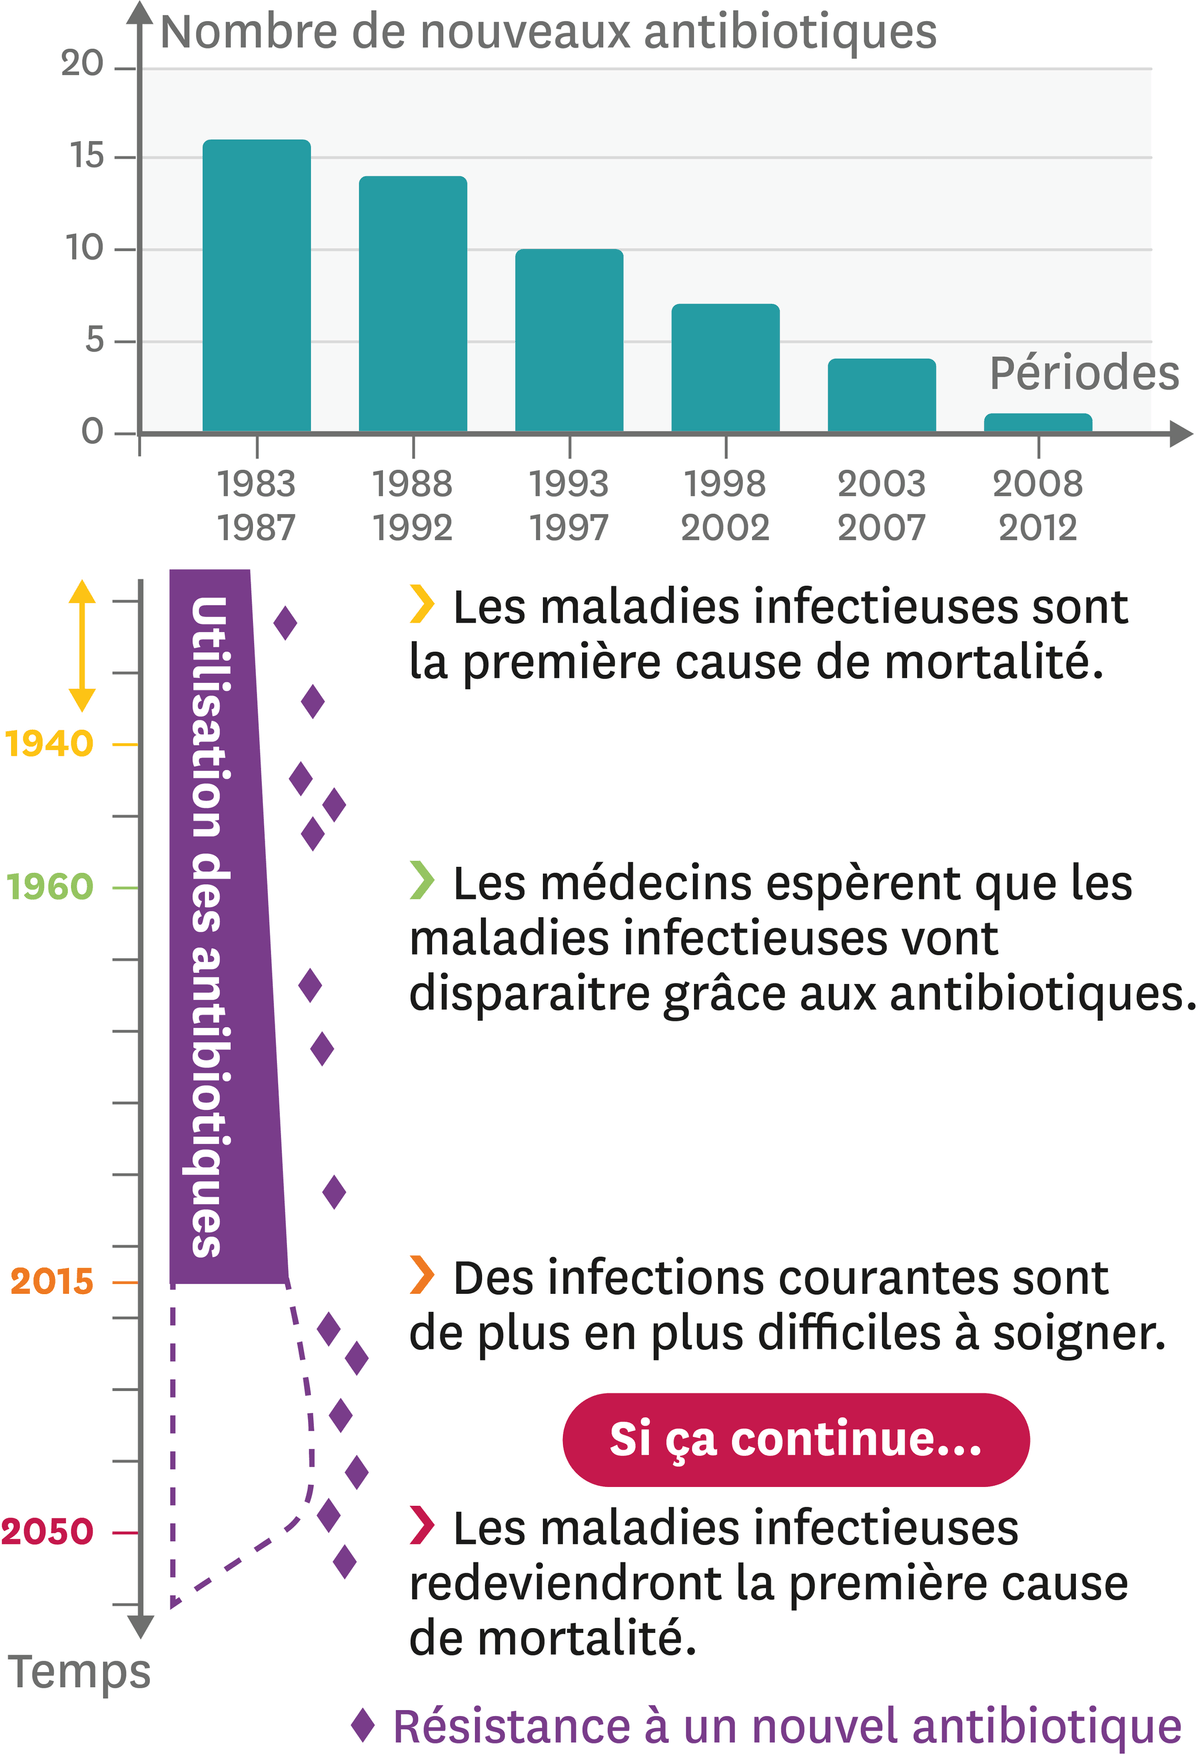 La résistance aux antibiotiques, un problème de santé publique.